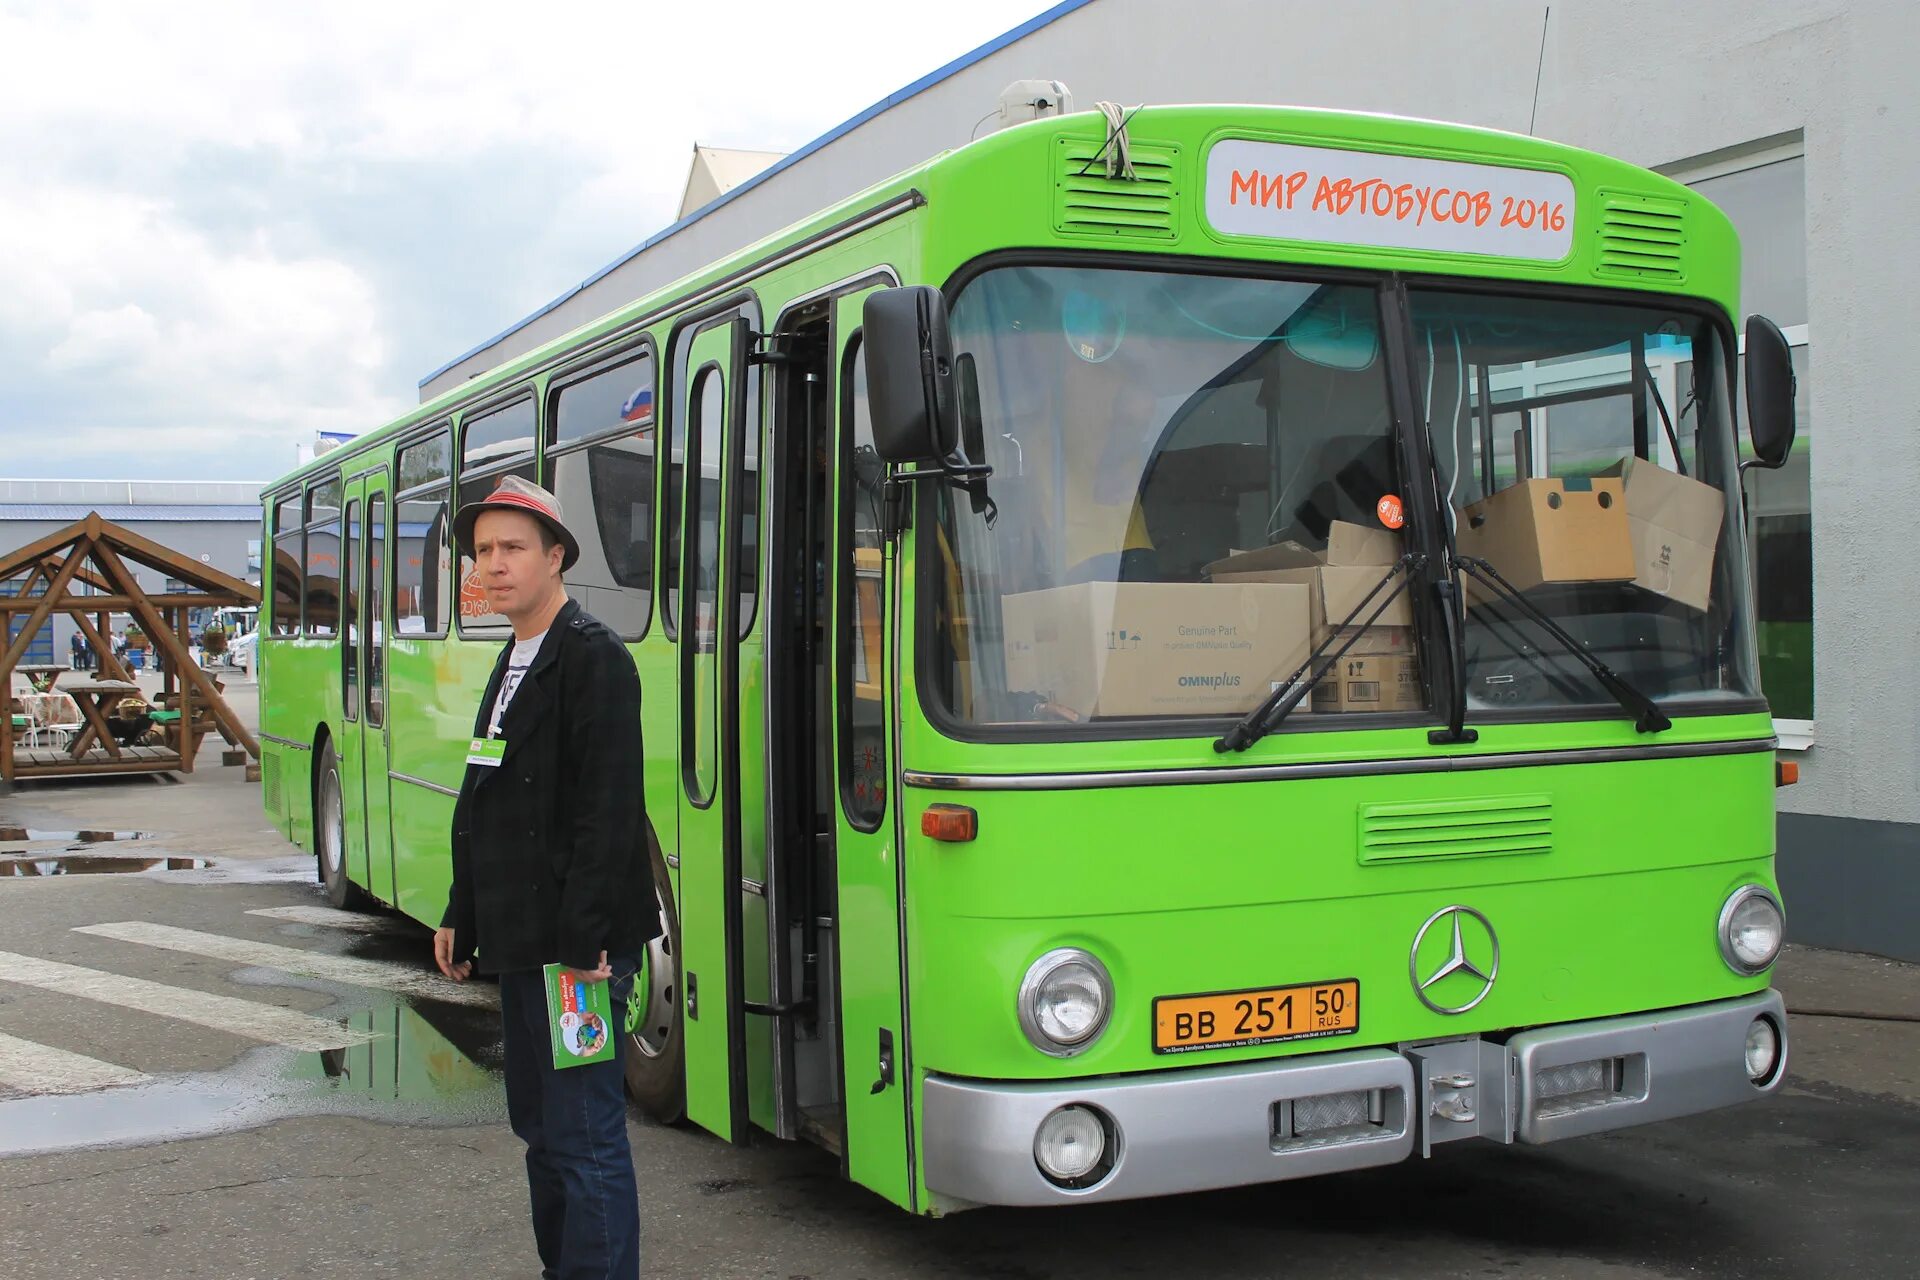 Новый мир автобусы. Автобус 2016. Мир автобусов. 2008 Год автобус. Автобусы Москвы в 2008 году.